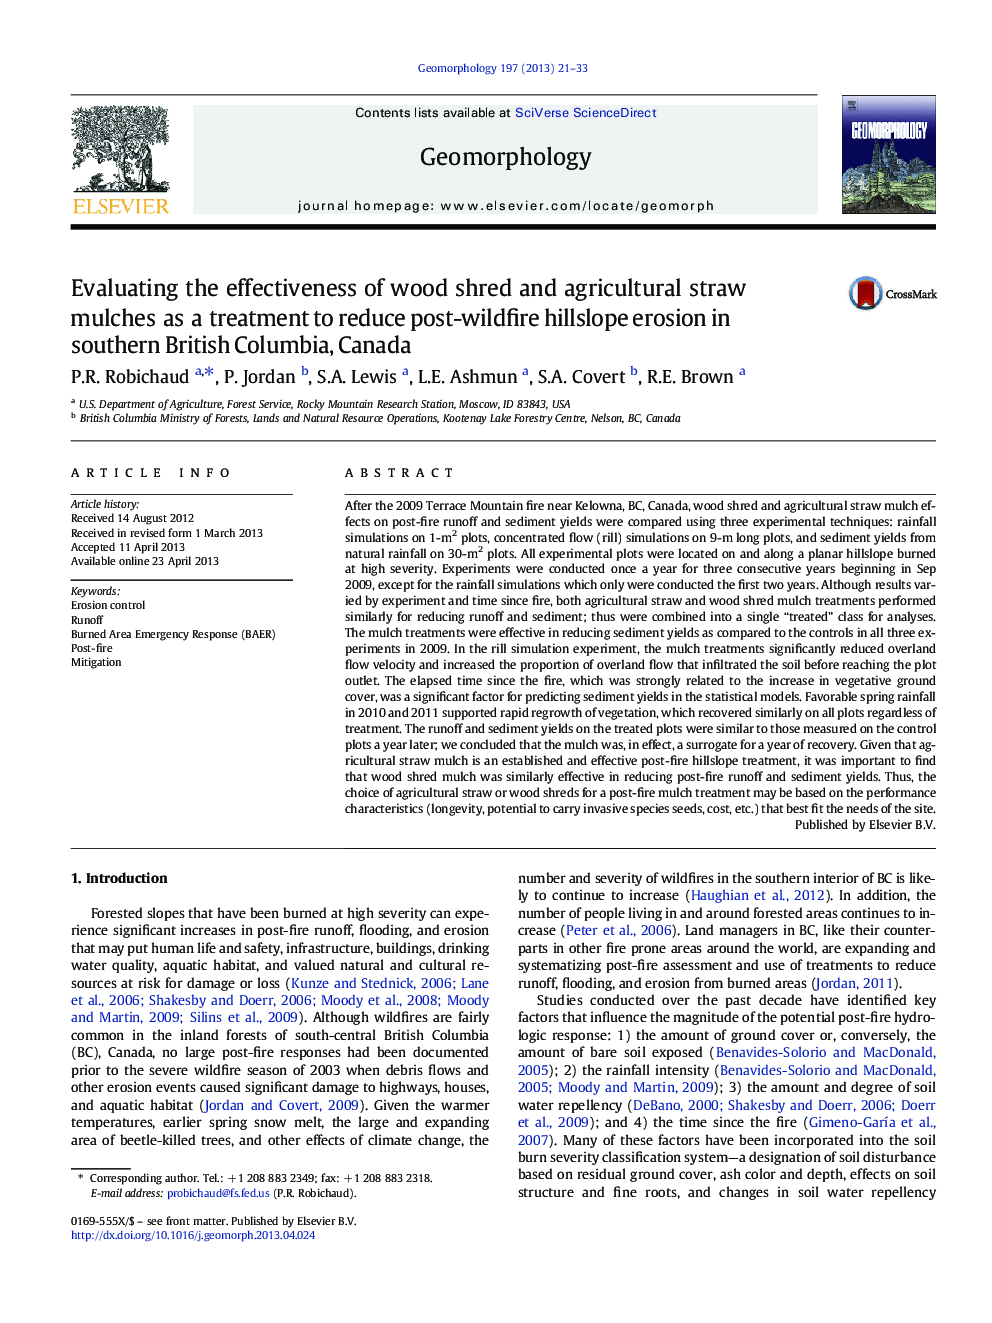 ارزیابی اثربخشی مالچ های شکسته چوبی و کشاورزی به عنوان یک درمان برای کاهش فرسایش خاک های کوهستانی در جنوب شرقی بریتیش کلمبیا، کانادا 